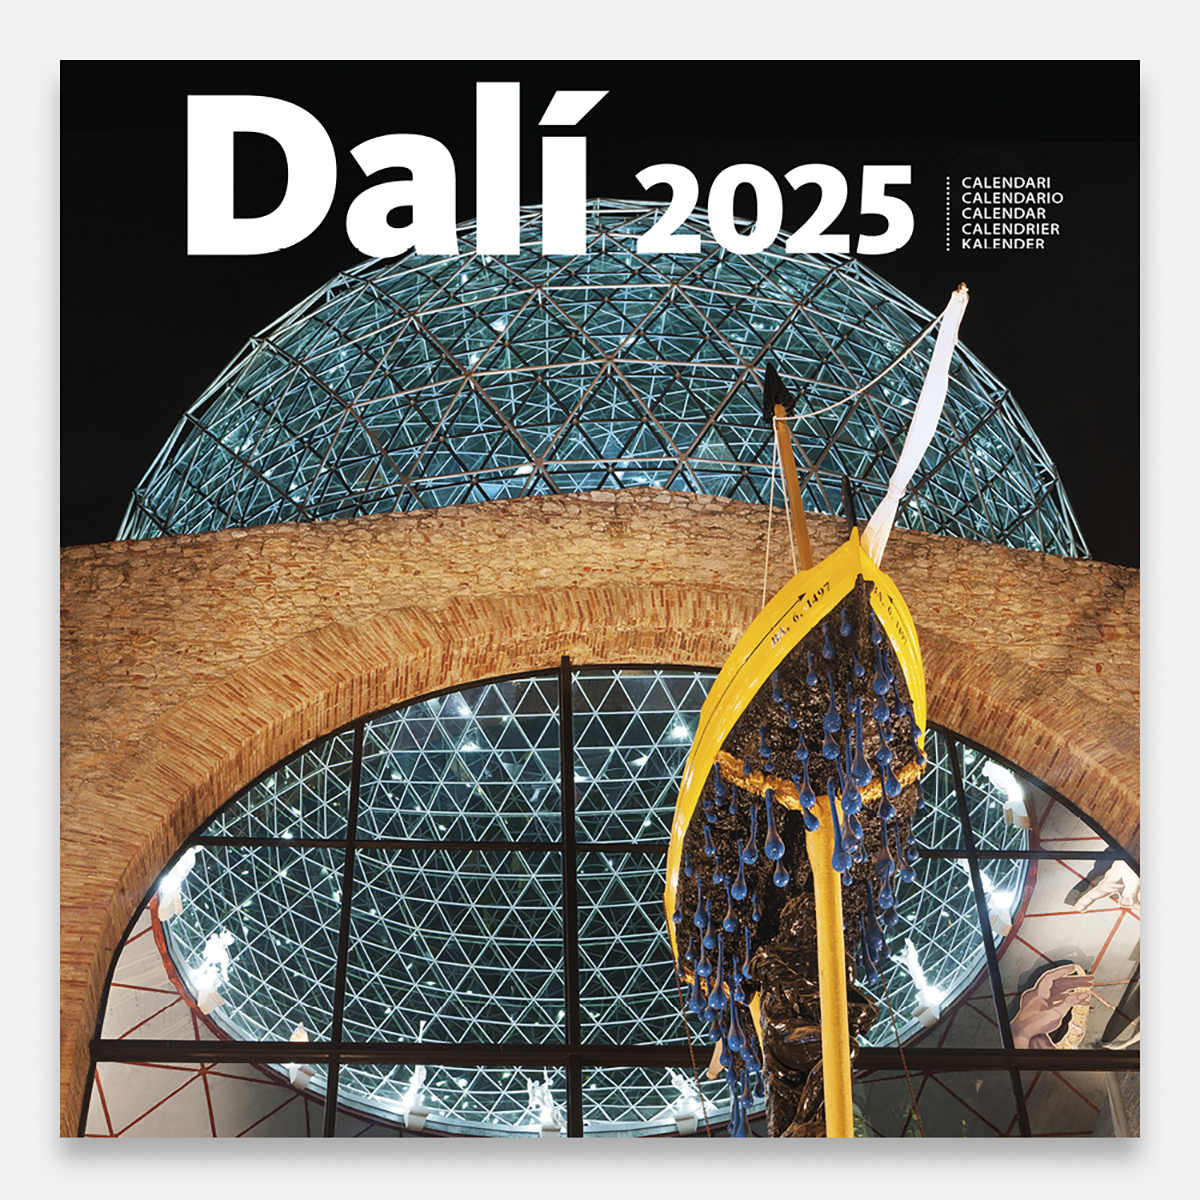 Calendario 2025 Dalí 25dg calendario pared 2025 salvador dali